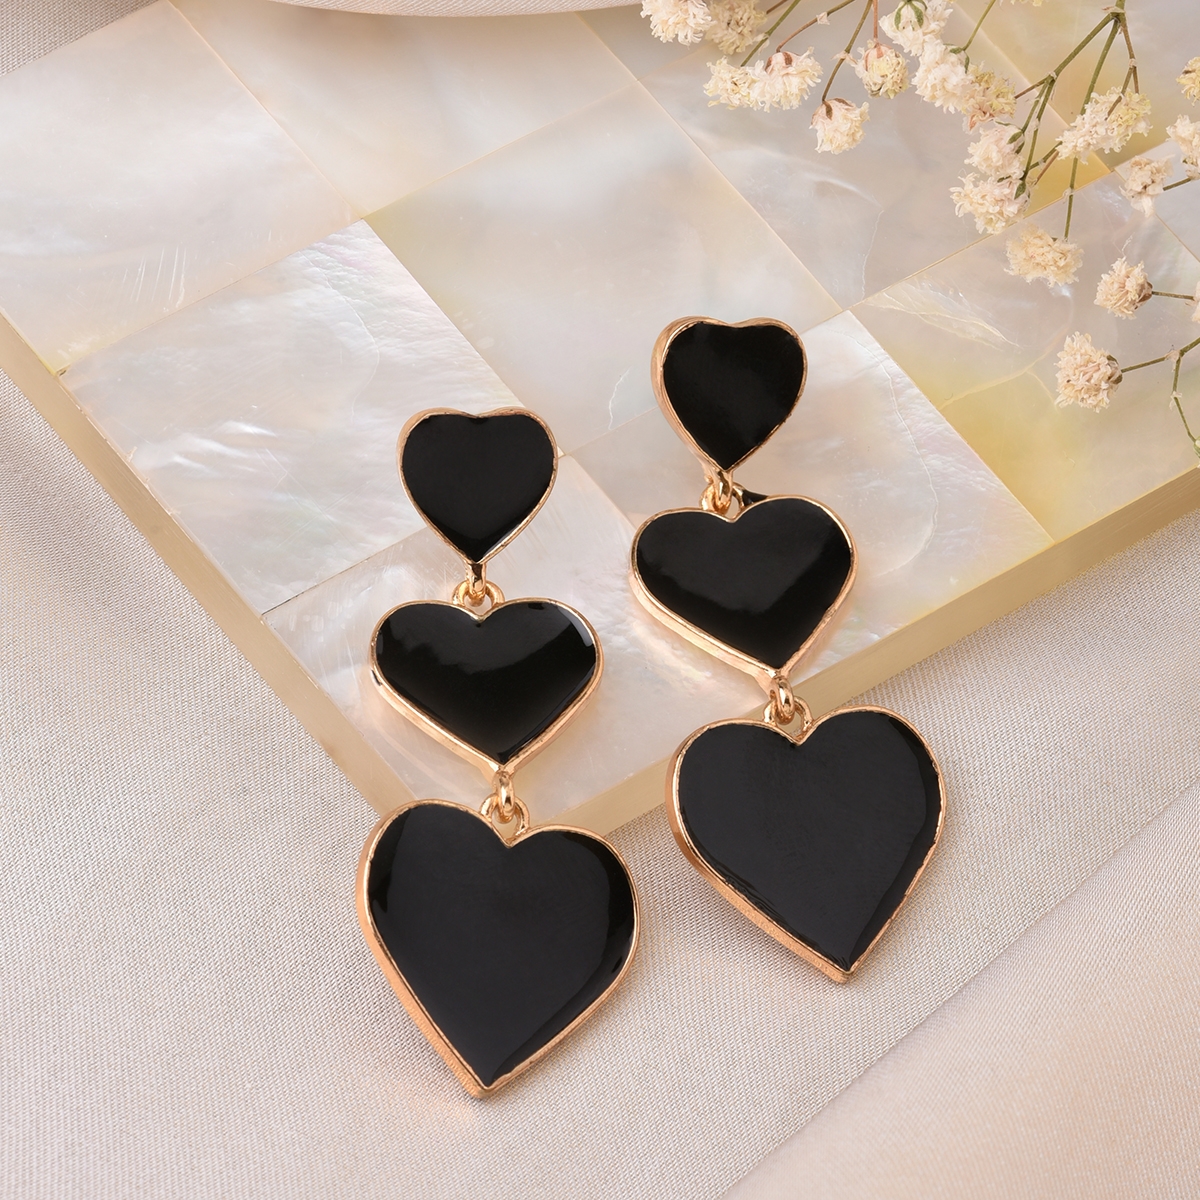 Lilly & sparkle | Lilly & Sparkle Gold Toned Black Enameled Triple Heart Dangler Earrings